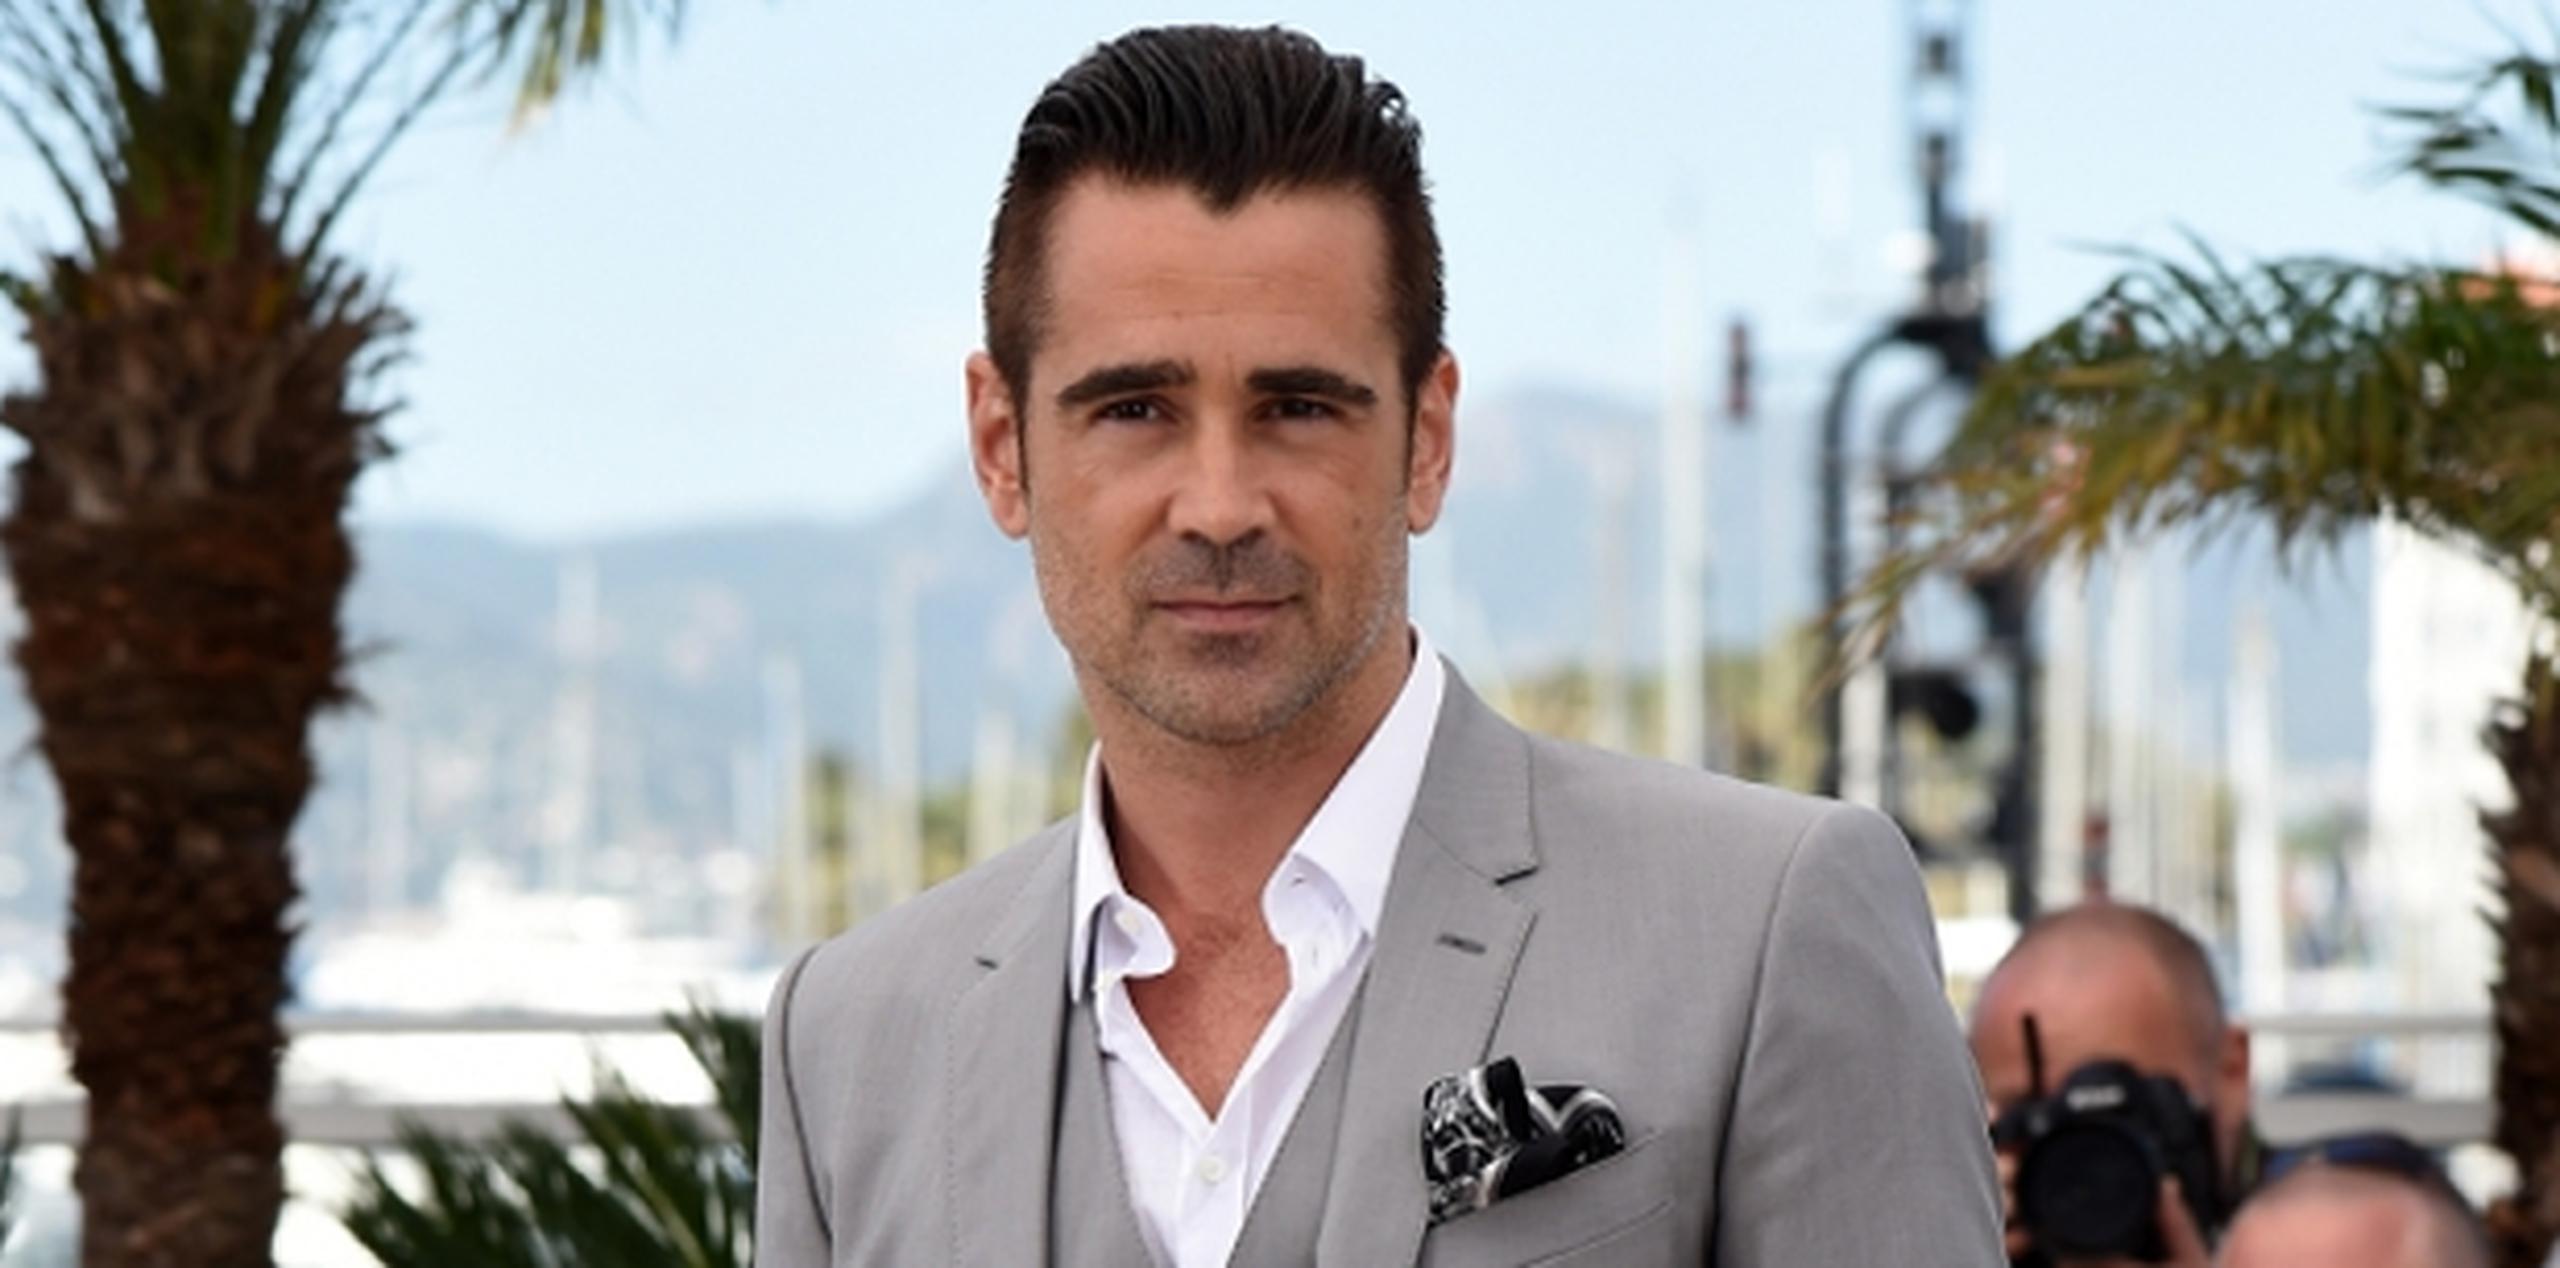 Farrell viajó a Cannes para promover "The Lobster", que compite por la Palma de Oro, el principal premio del festival. (AP)